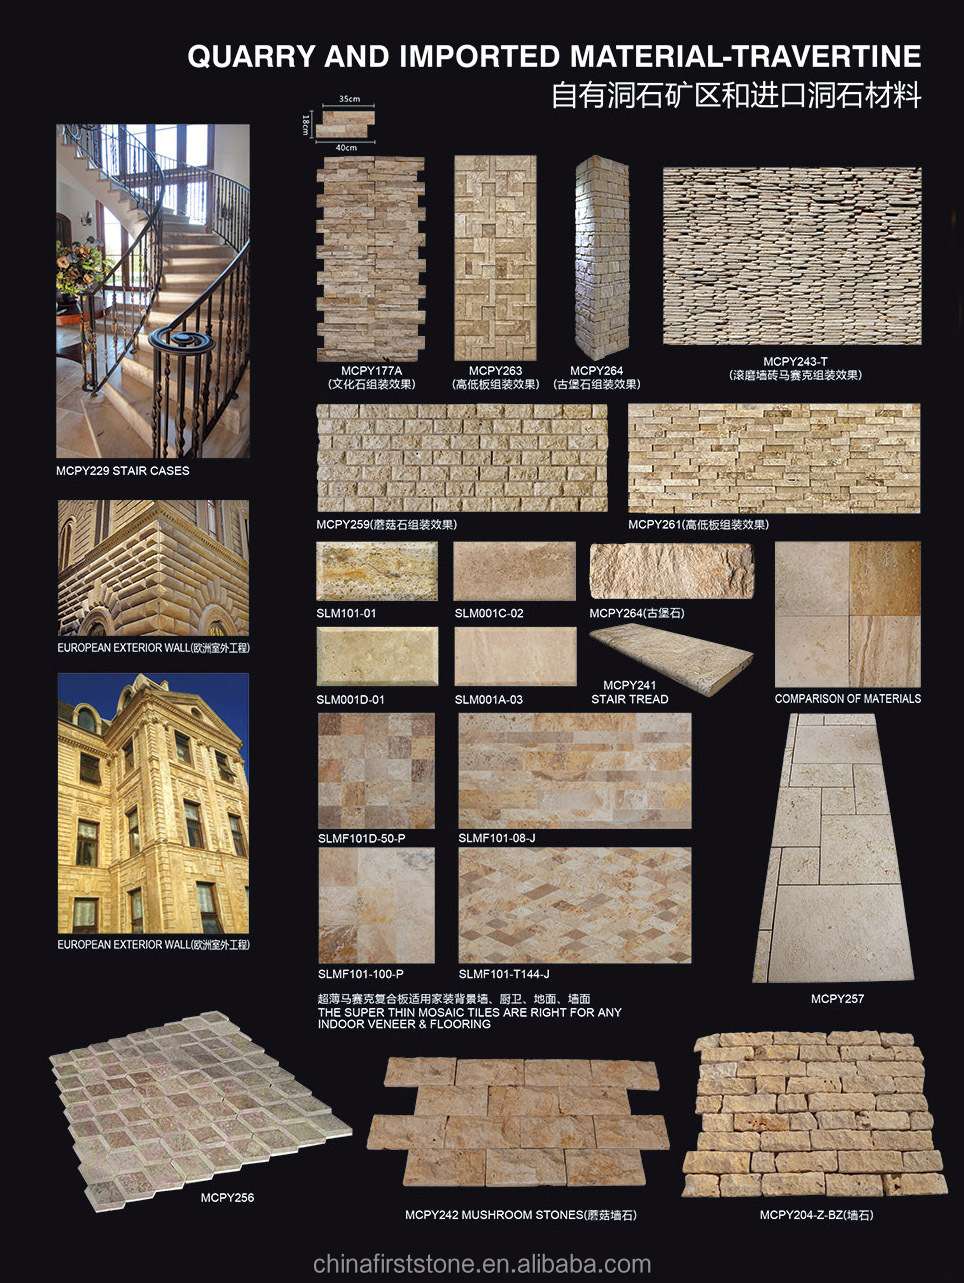 MCPY243-T Travertine Stone Castle Brick Design Wall Cladding